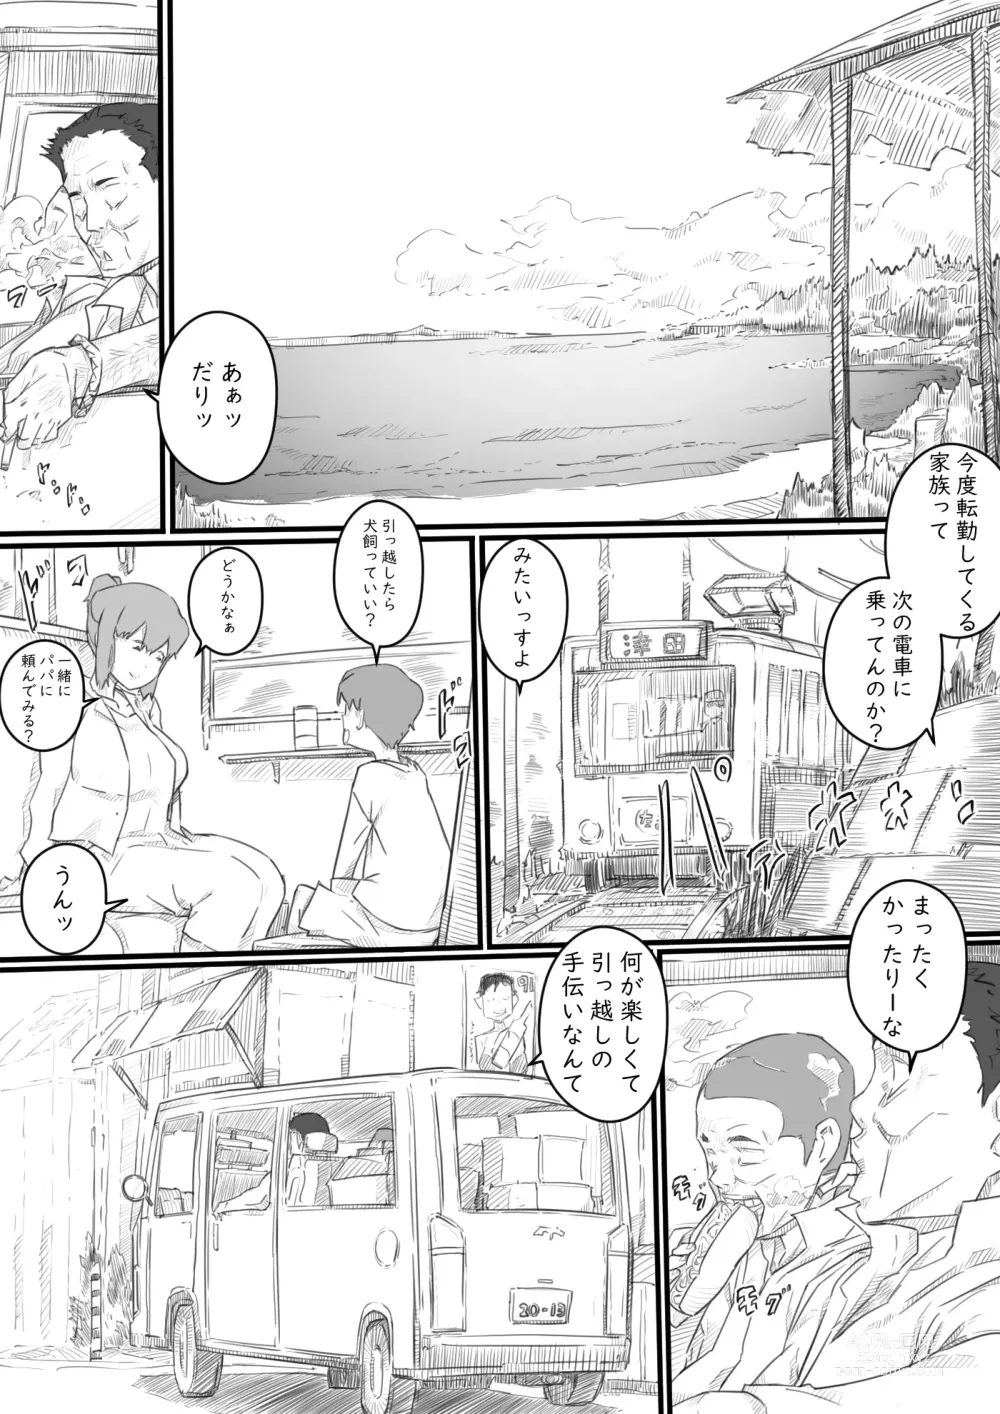 Page 6 of doujinshi Kyou kara Mama wa Betsu no Dareka no Mono...